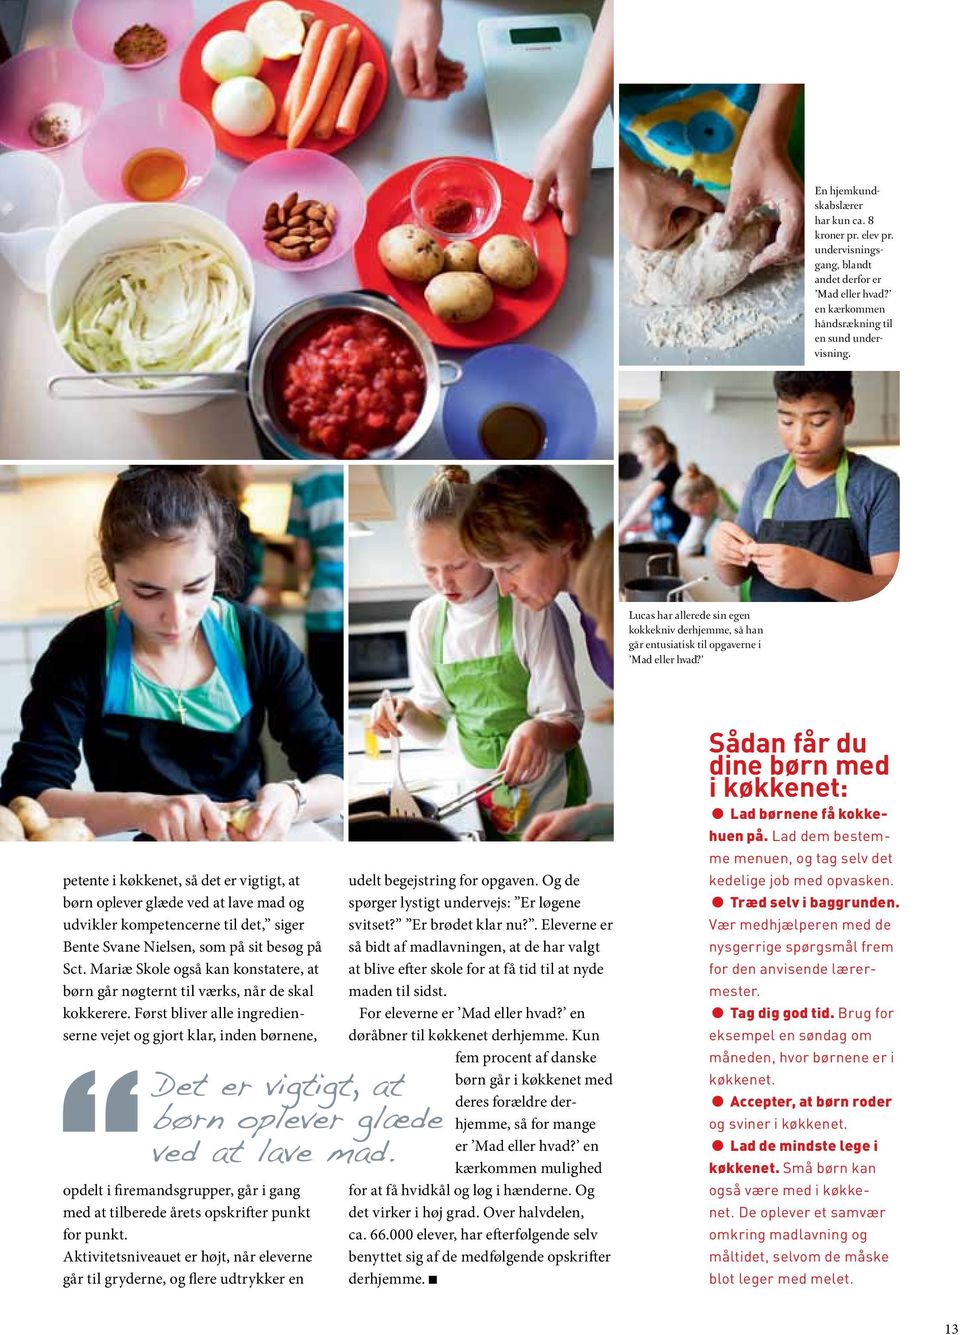 petente i køkkenet, så det er vigtigt, at børn oplever glæde ved at lave mad og udvikler kompetencerne til det, siger Bente Svane Nielsen, som på sit besøg på Sct.